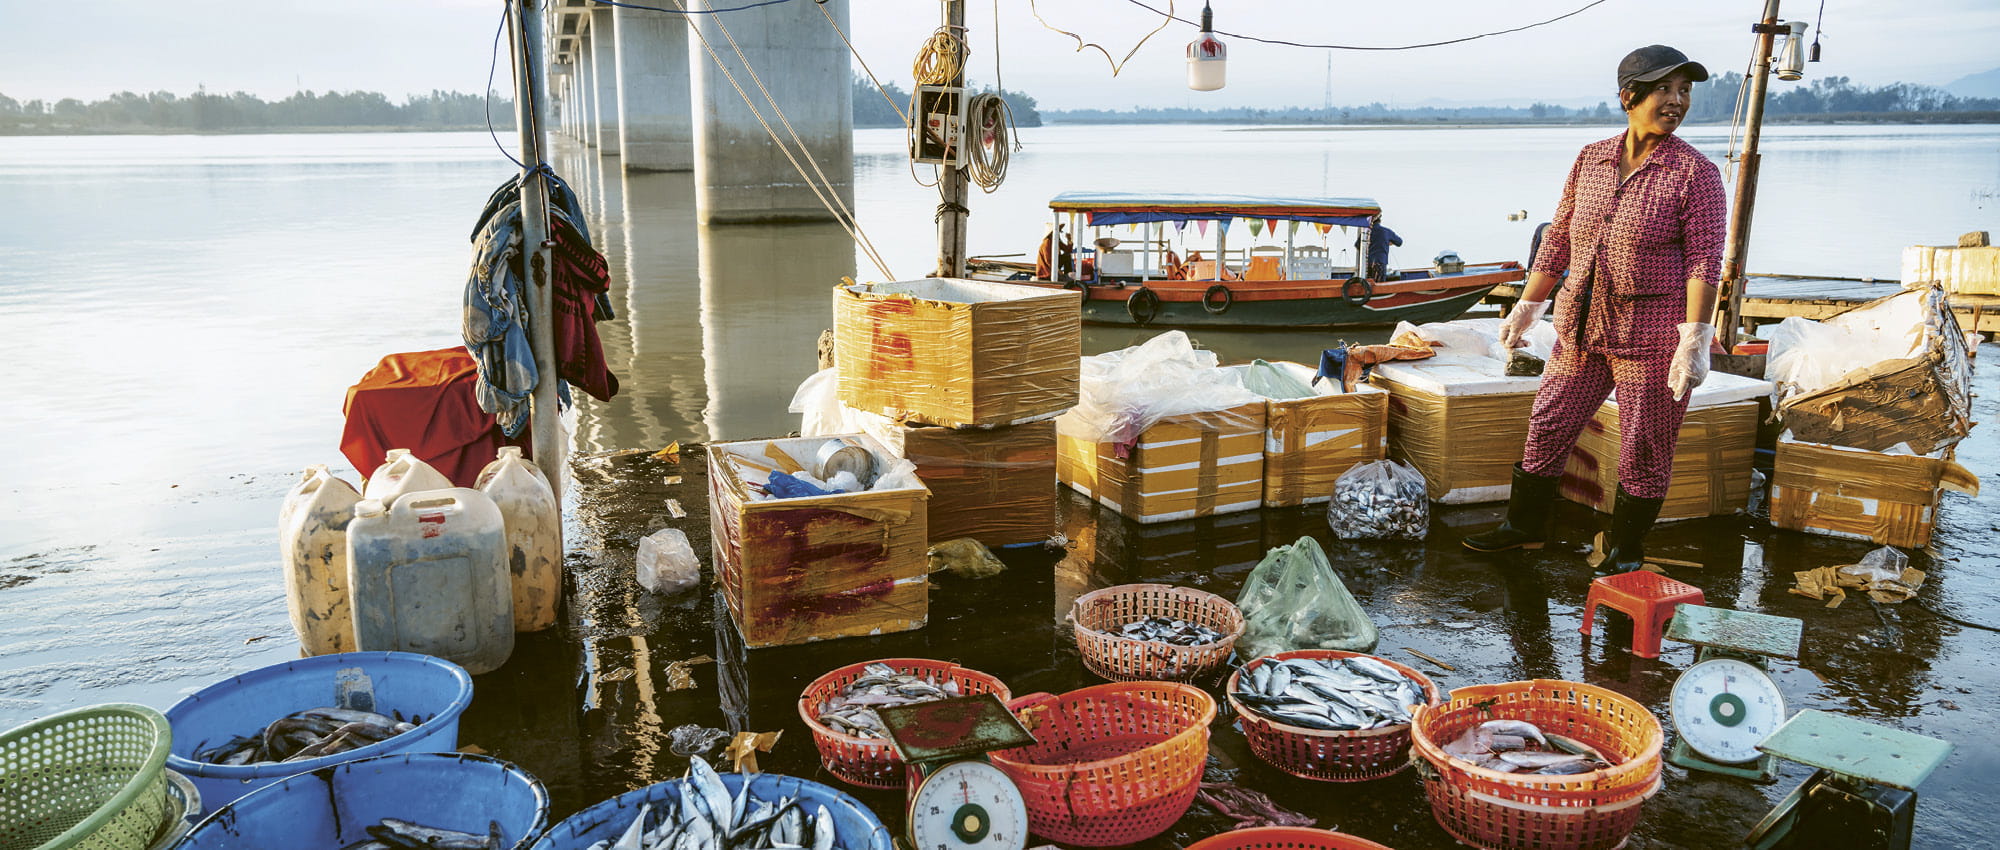 Eine Frau steht neben Eimern voller Fisch. Copyright: iStock/Nikada